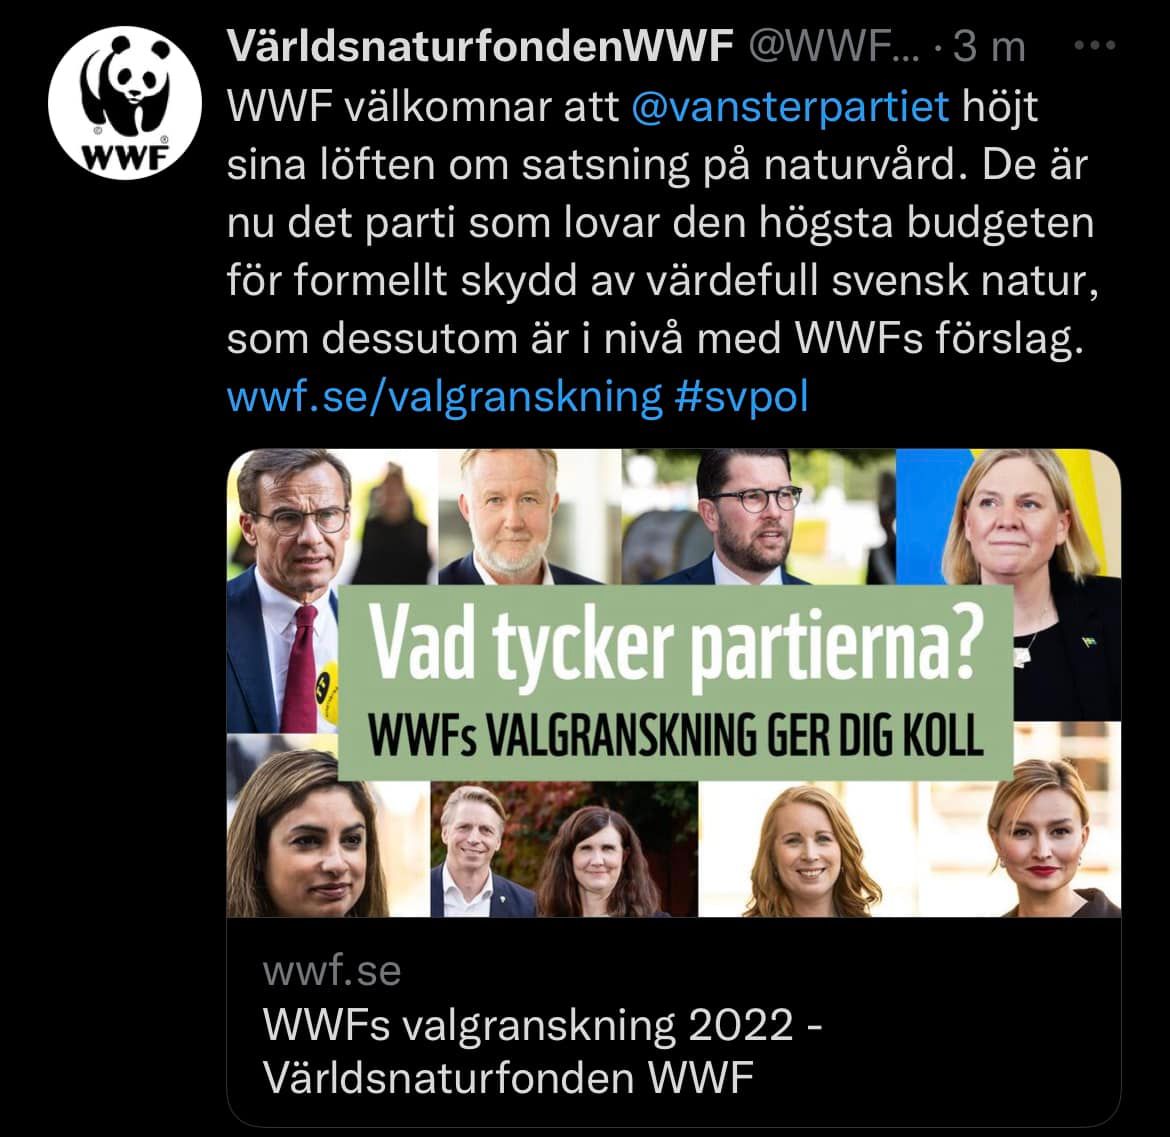 WWF:s granskning av partierna